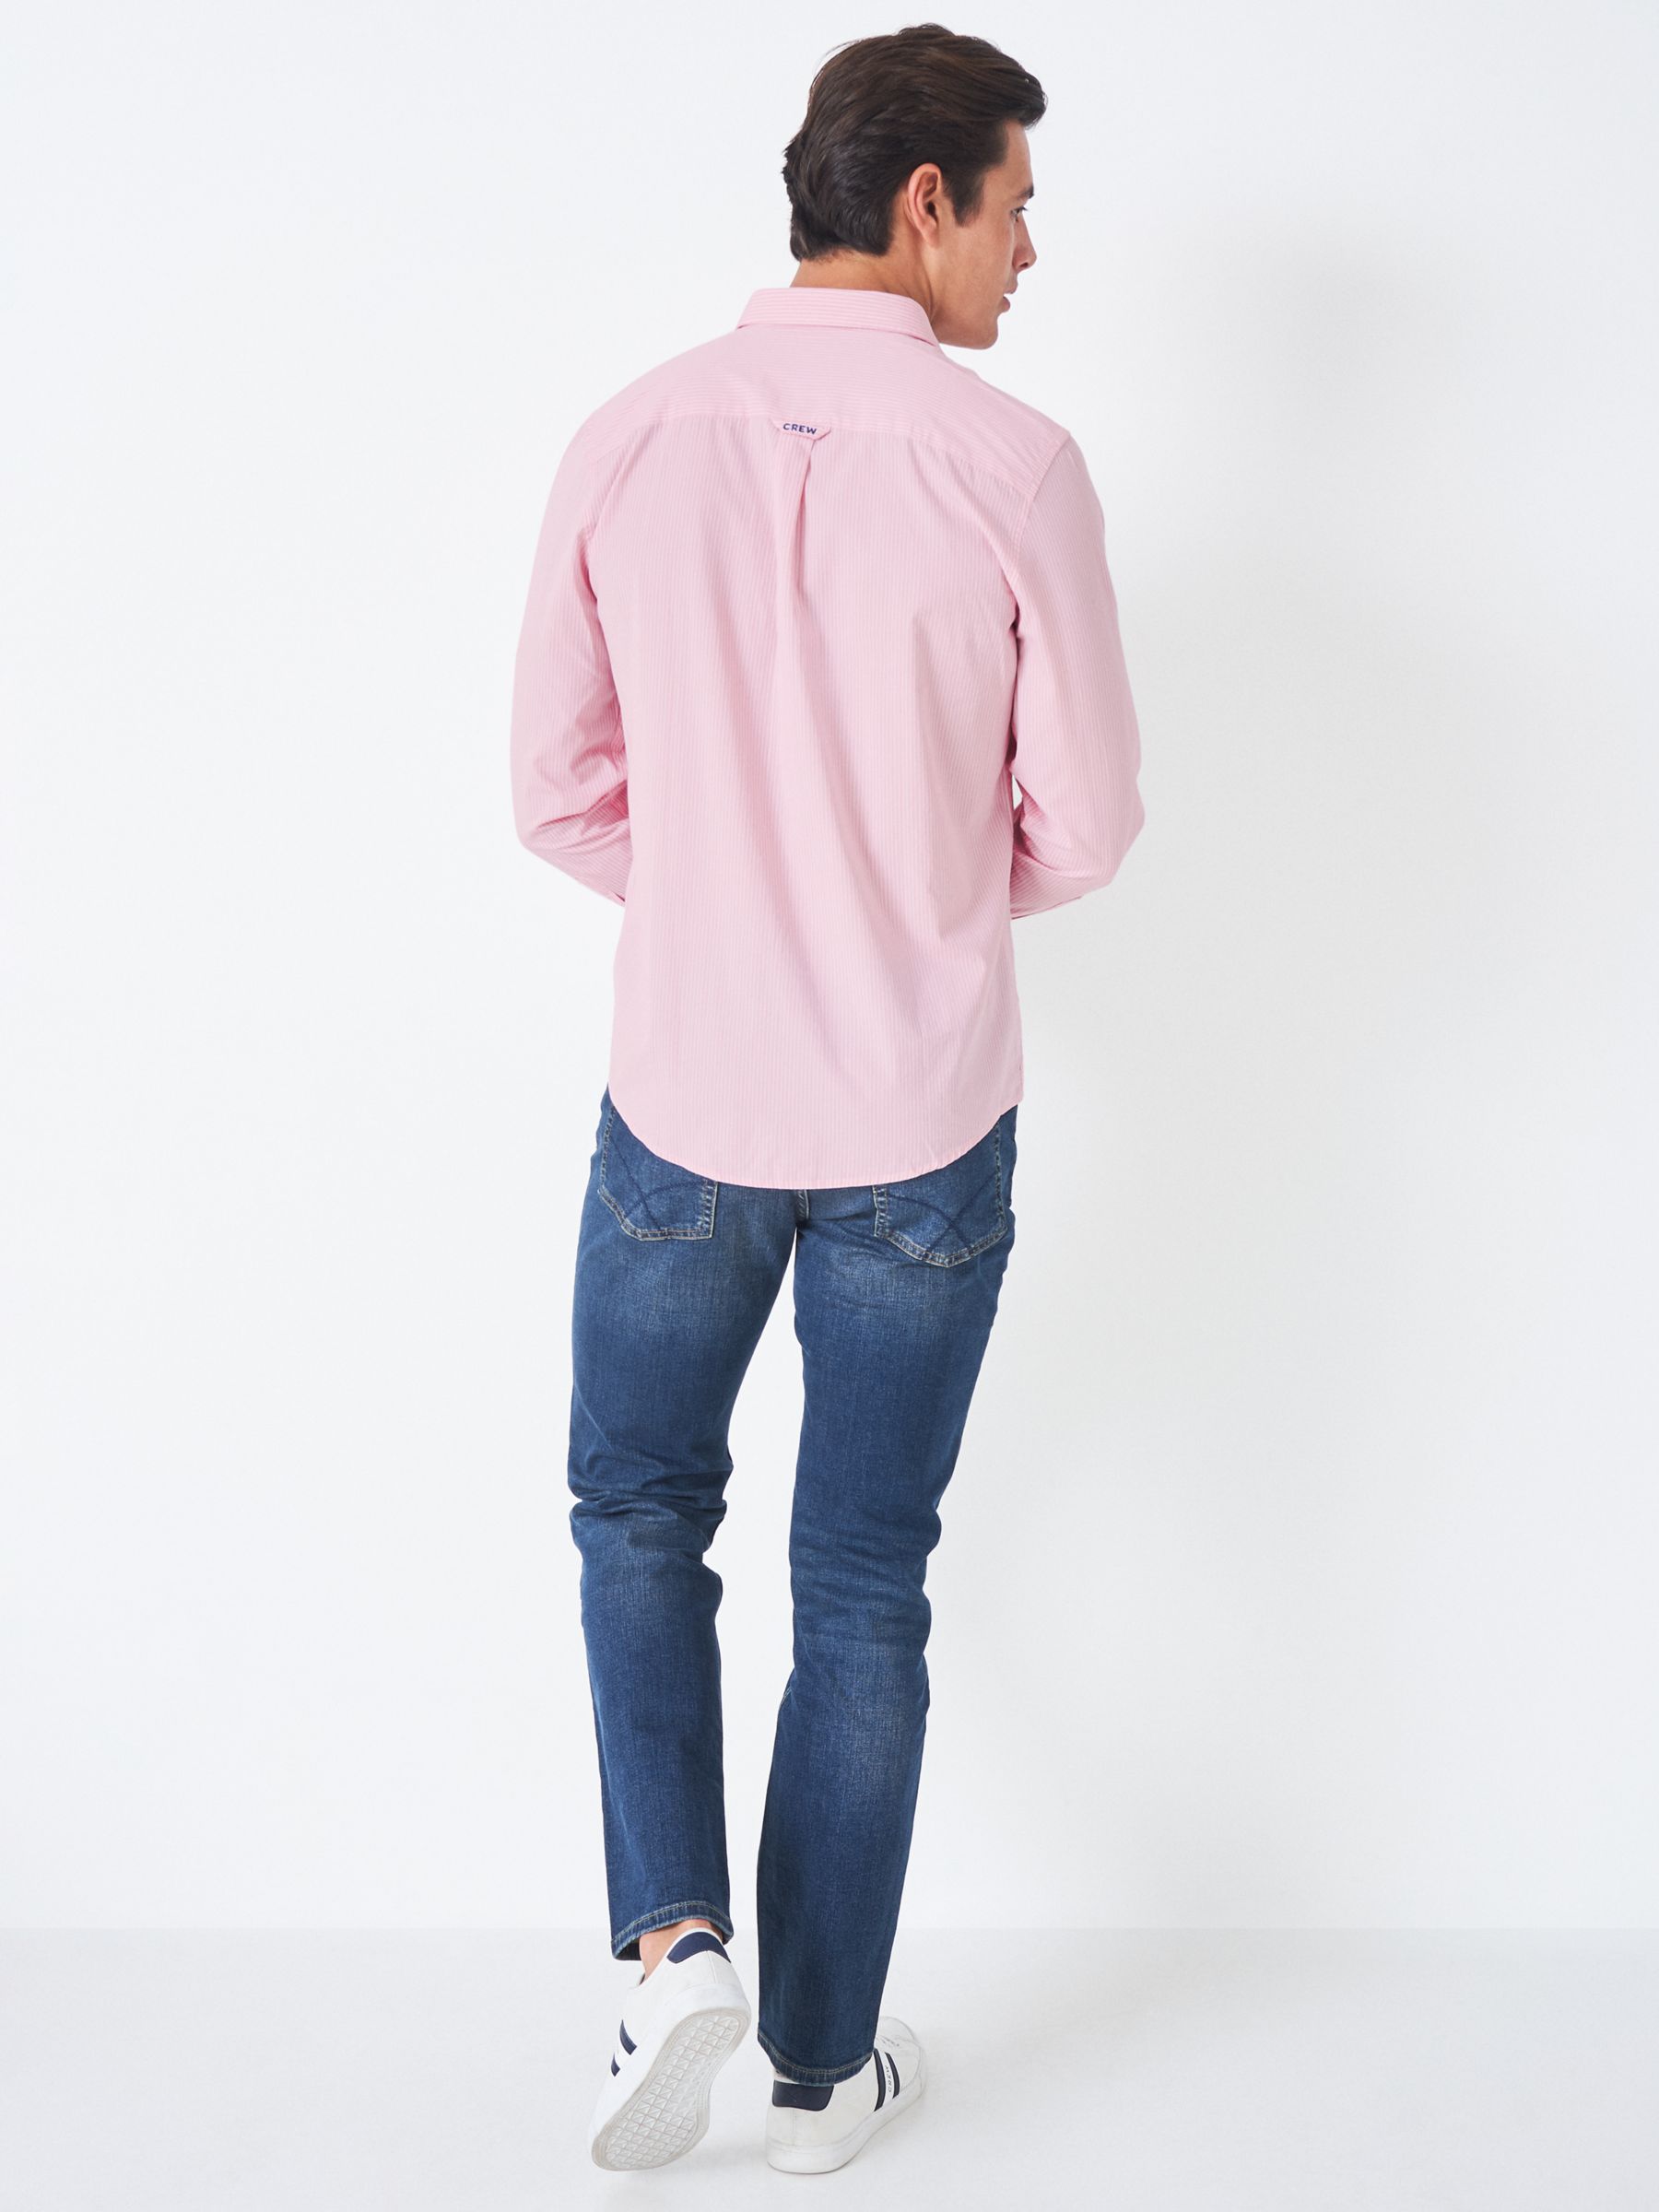 Crew Clothing Micro Stripe Cotton Shirt, Pink at John Lewis & Partners